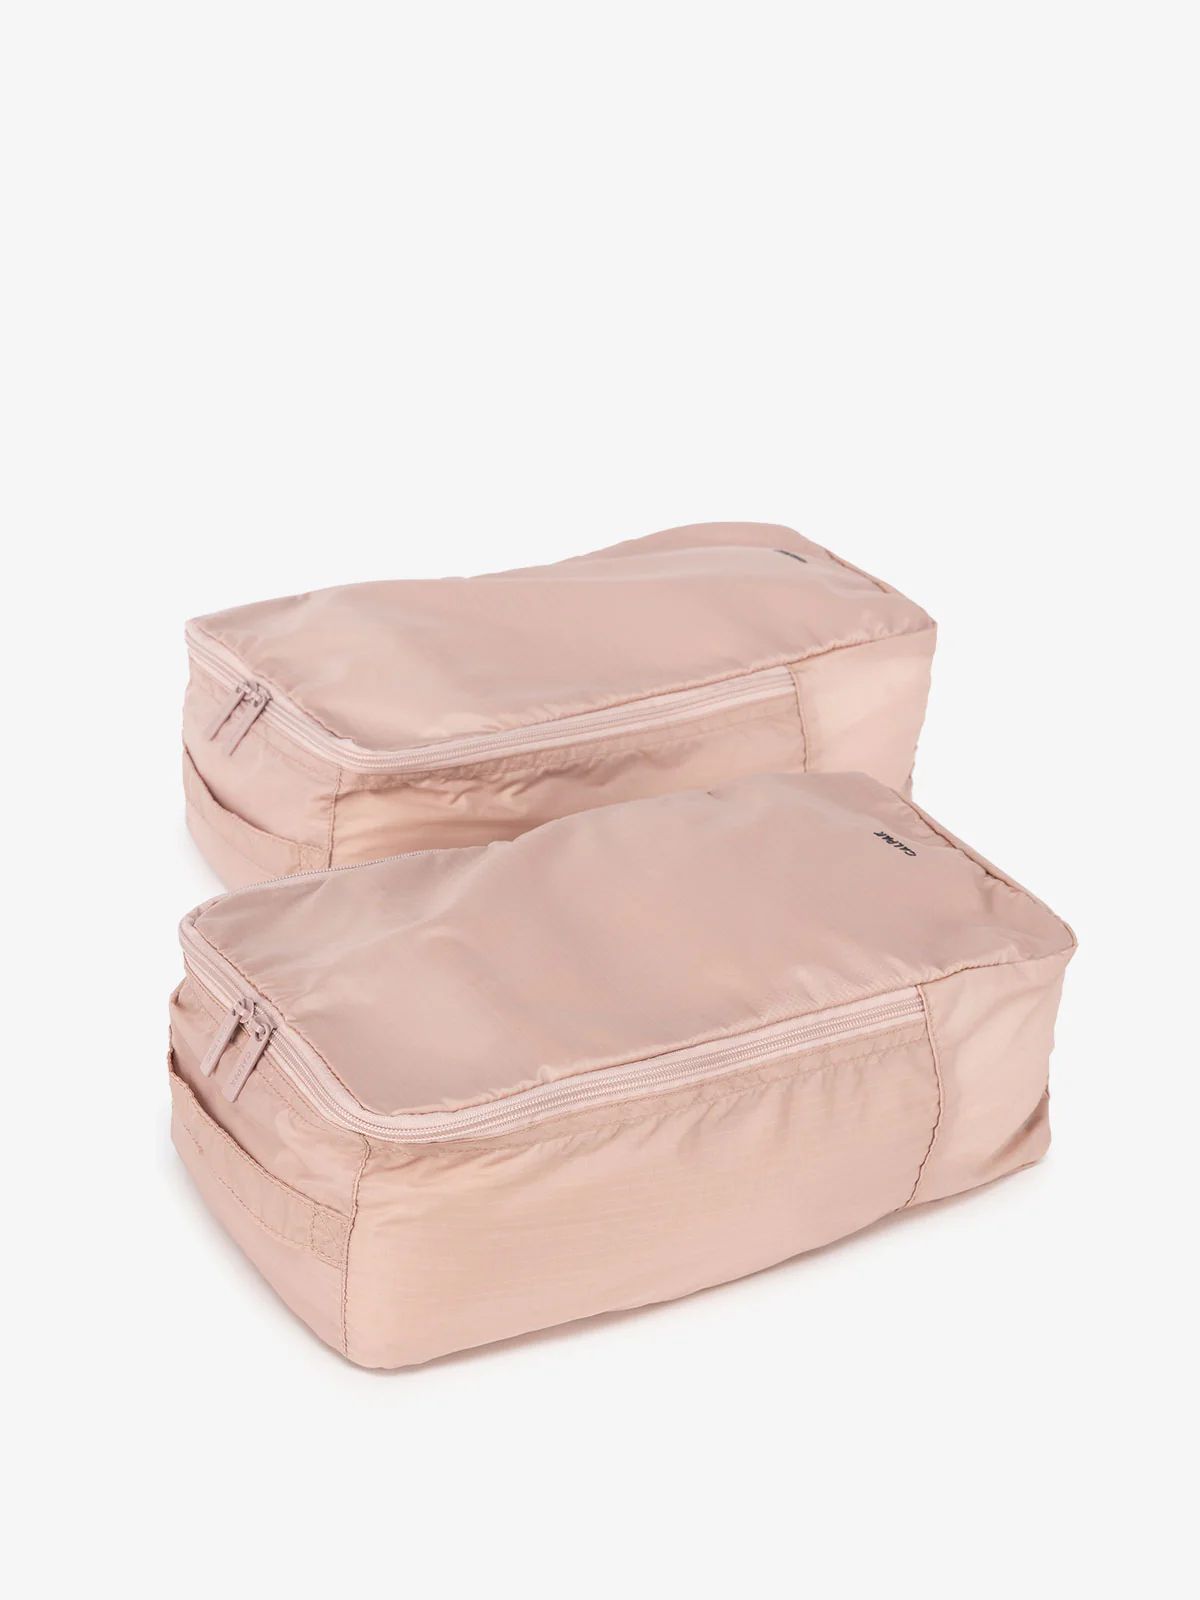 Compakt Shoe Bag Set | CALPAK | CALPAK Travel